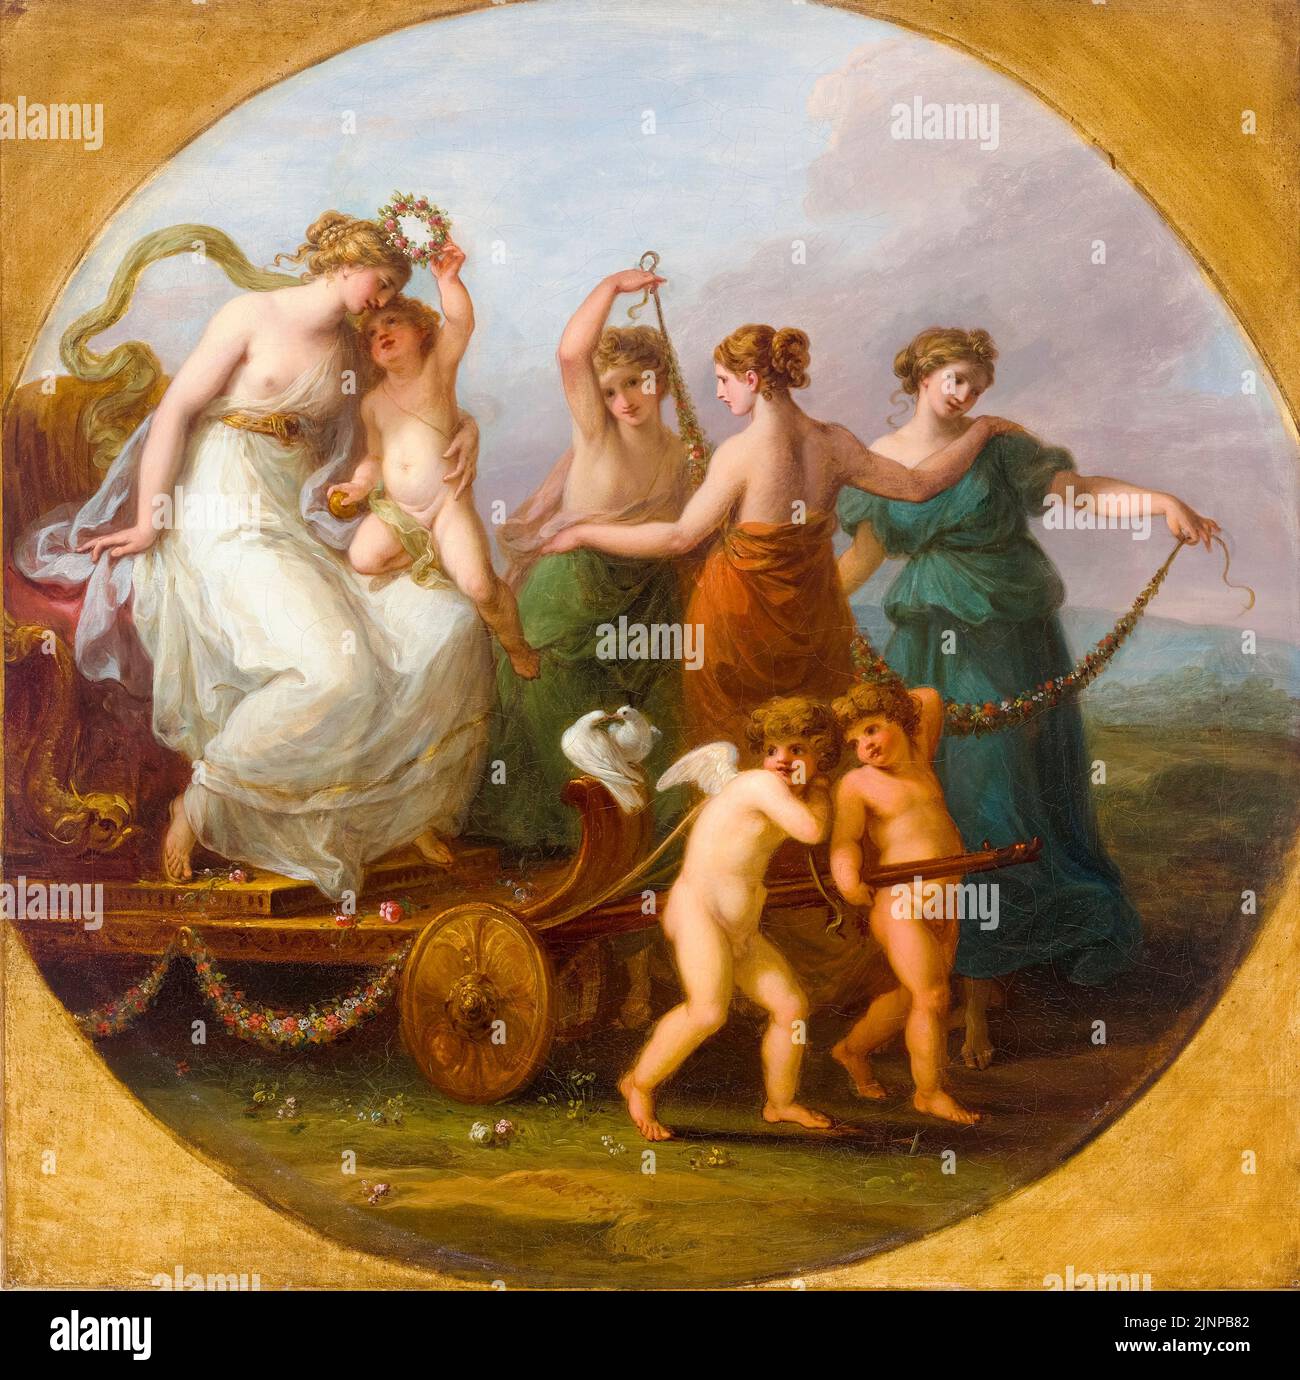 El triunfo de Venus con las tres Gracias, pintura al óleo sobre lienzo de Angelica Kaufmann, antes de 1807 Foto de stock